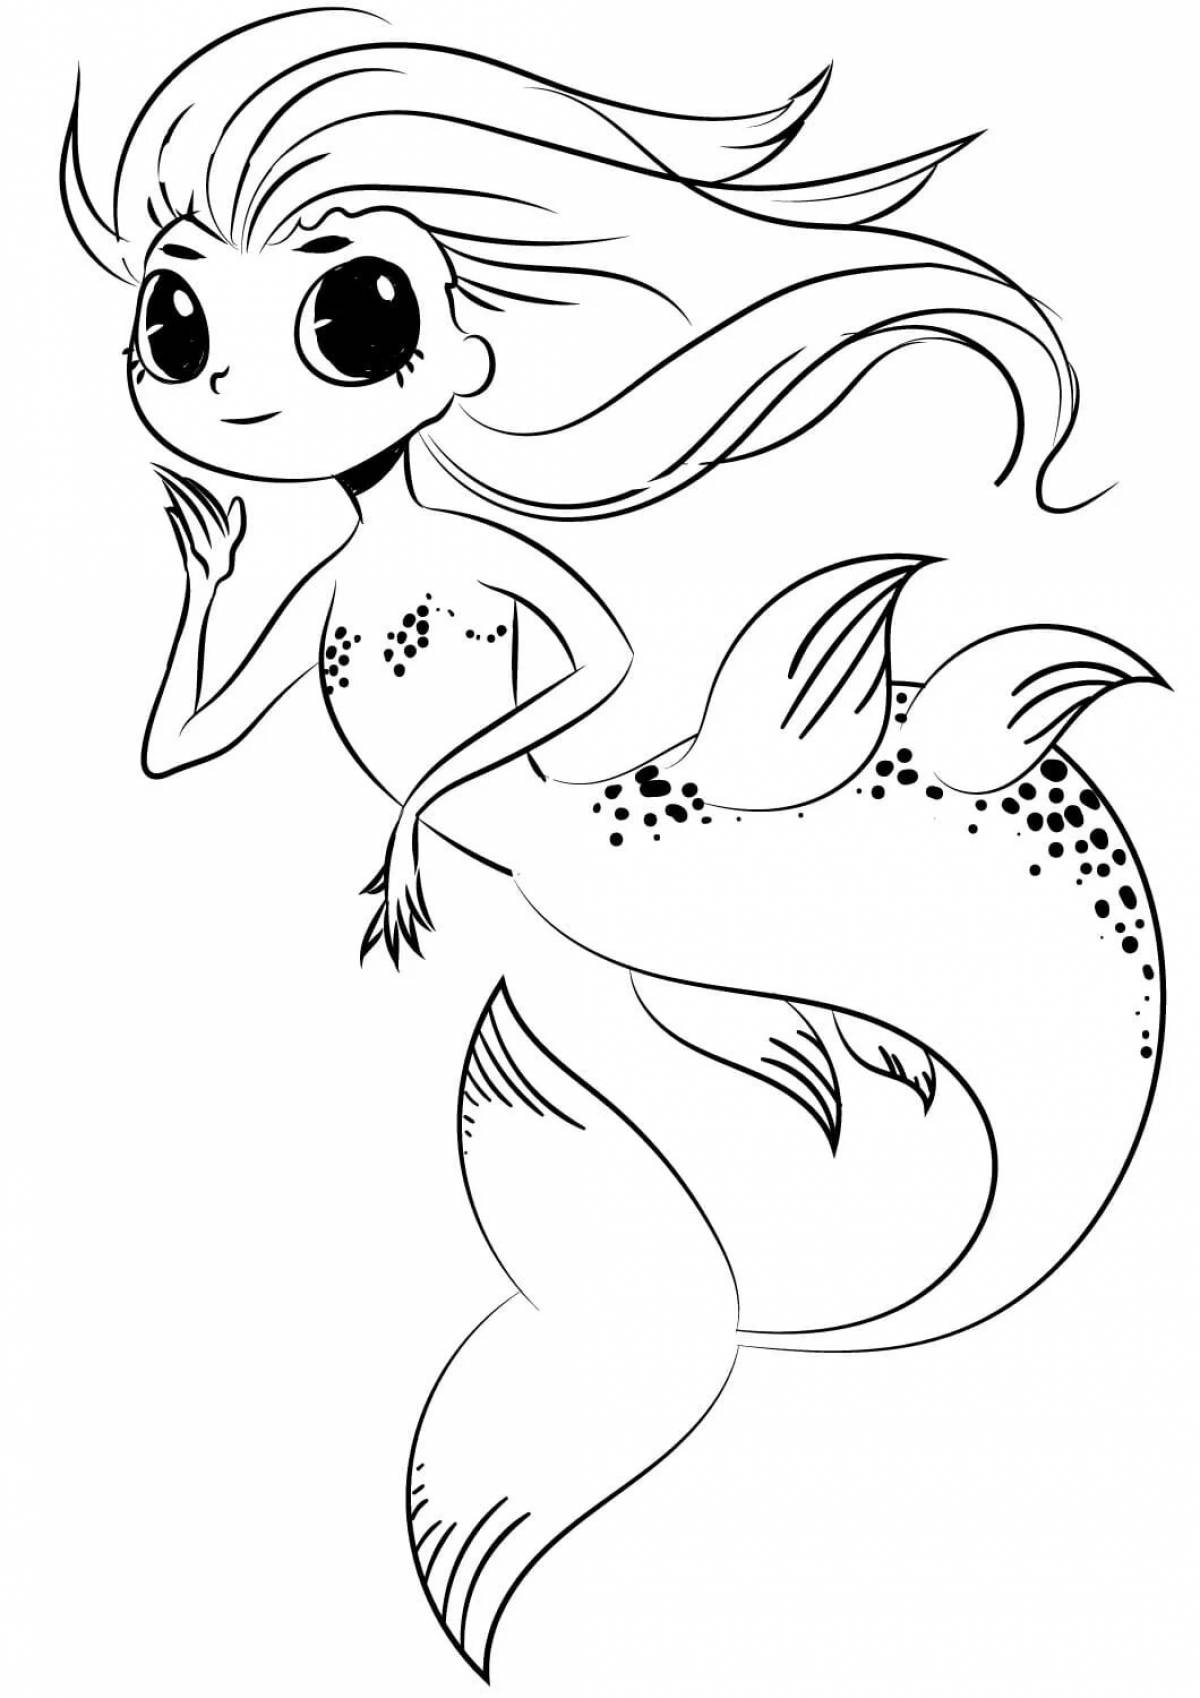 Mermaid pattern #5